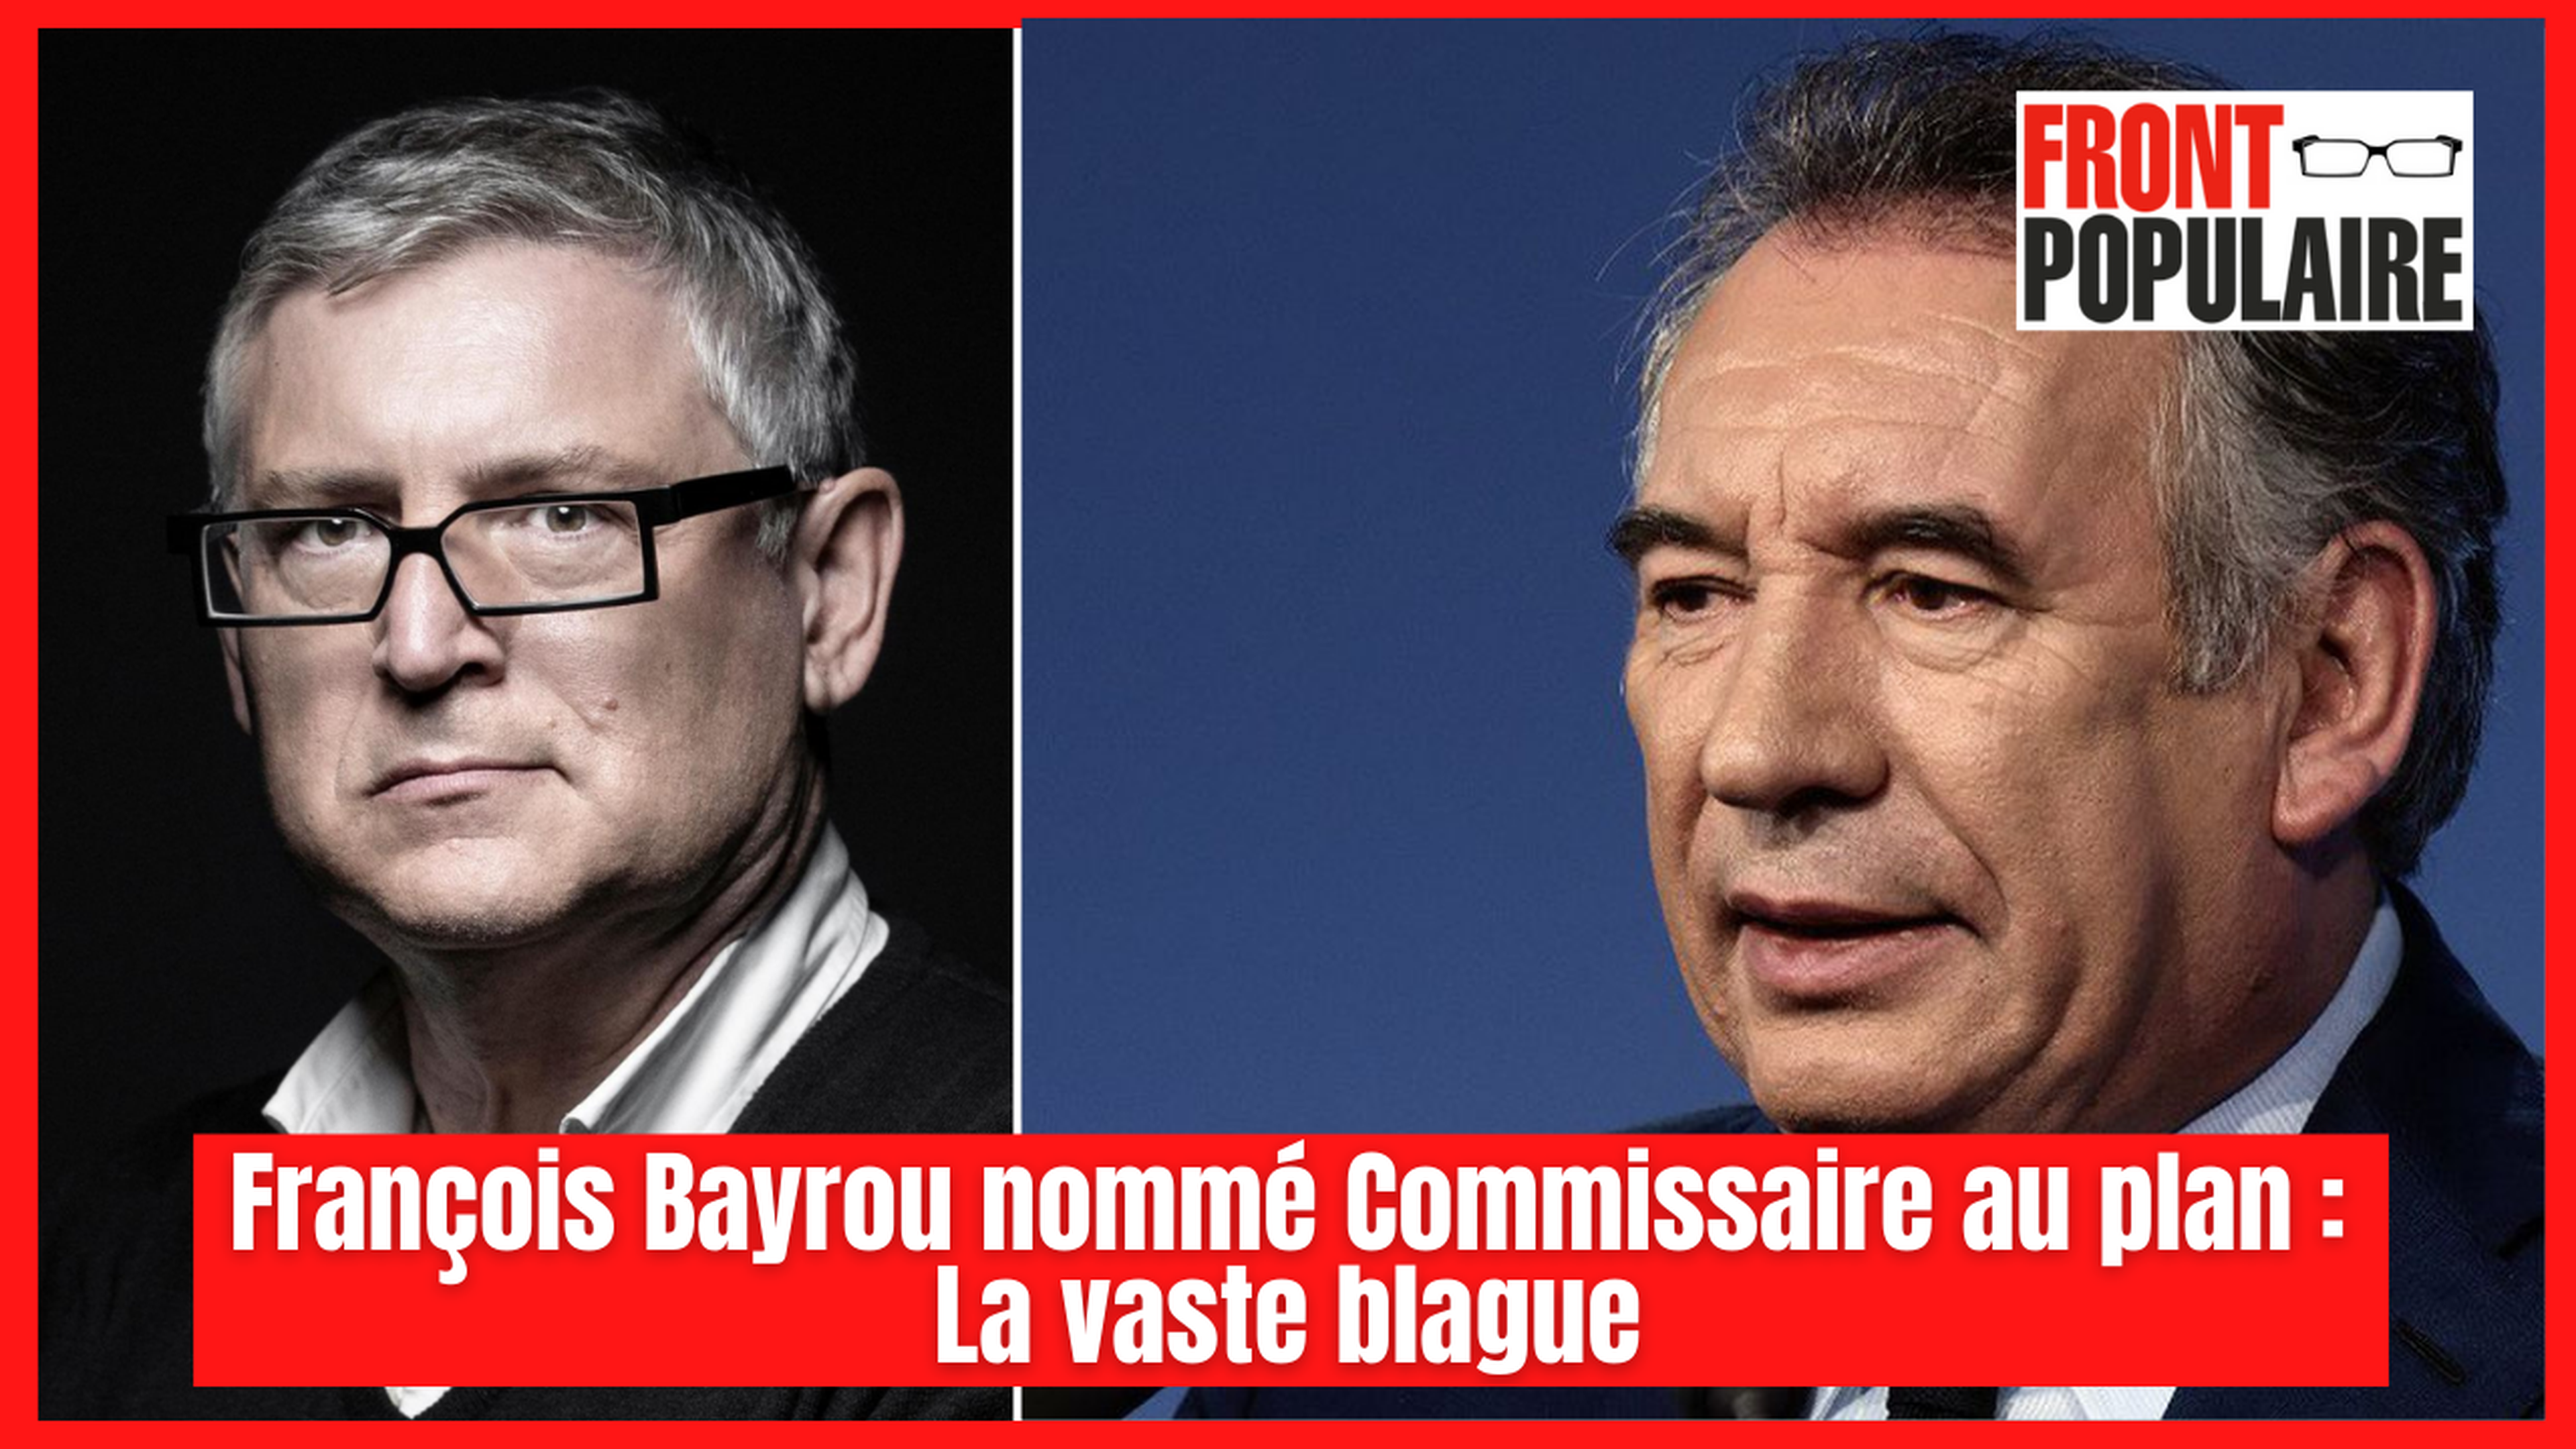 François Bayrou nommé Commissaire au plan: La vaste blague